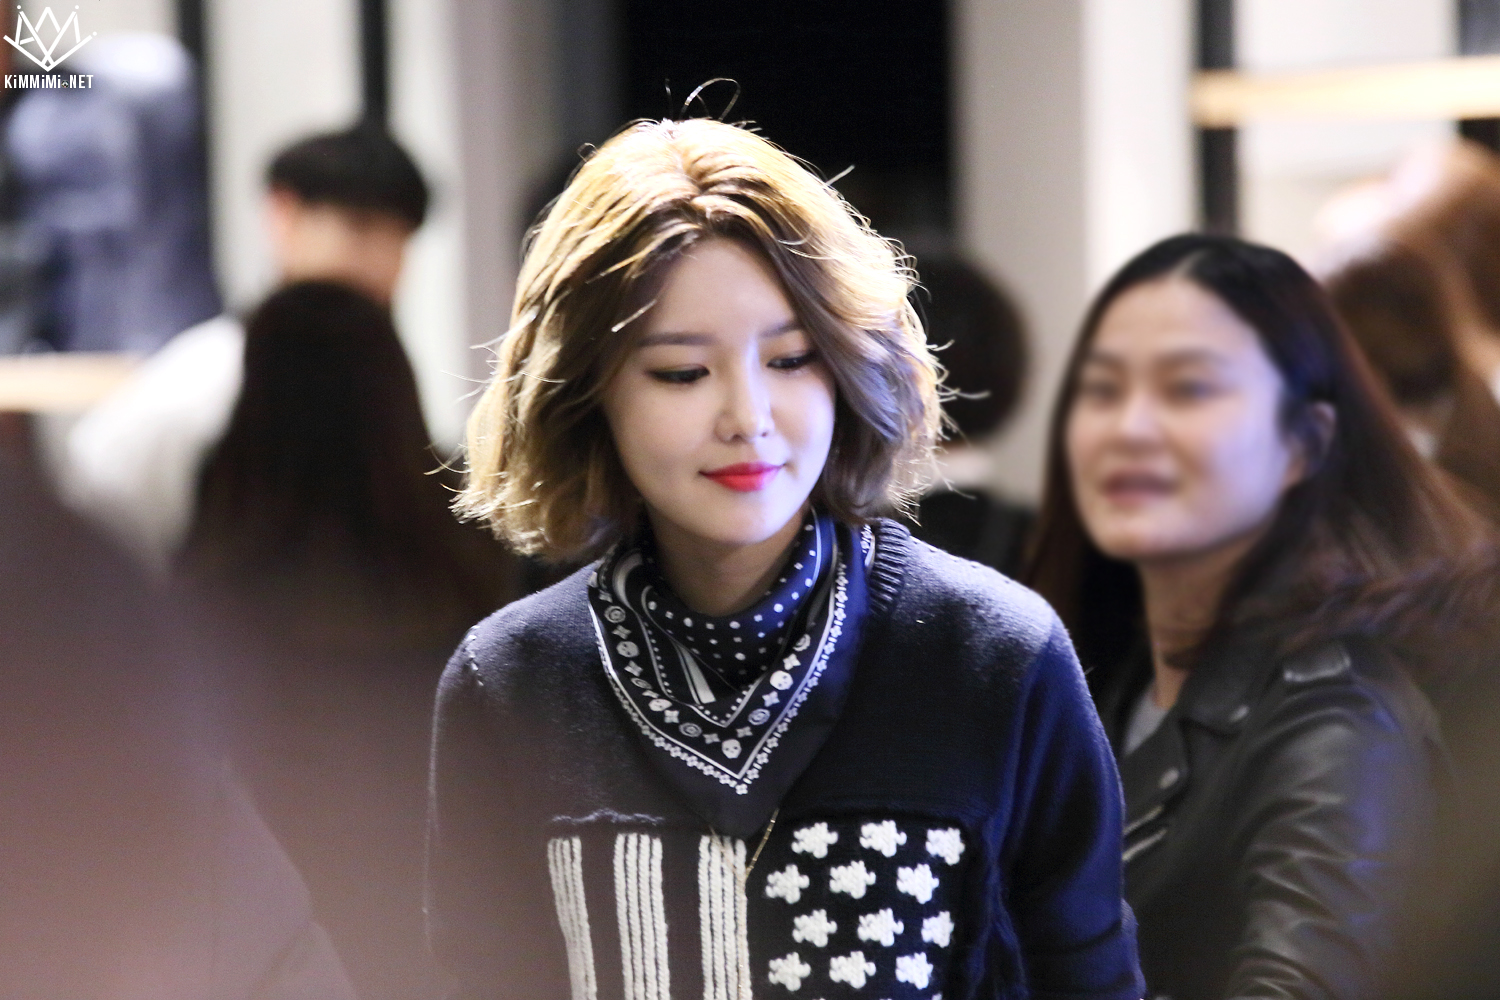  [PIC][27-11-2015]SooYoung tham dự buổi Fansign cho thương hiệu "COACH" tại Lotte Department Store Busan vào trưa nay - Page 2 272D333E56BB25270C8D48